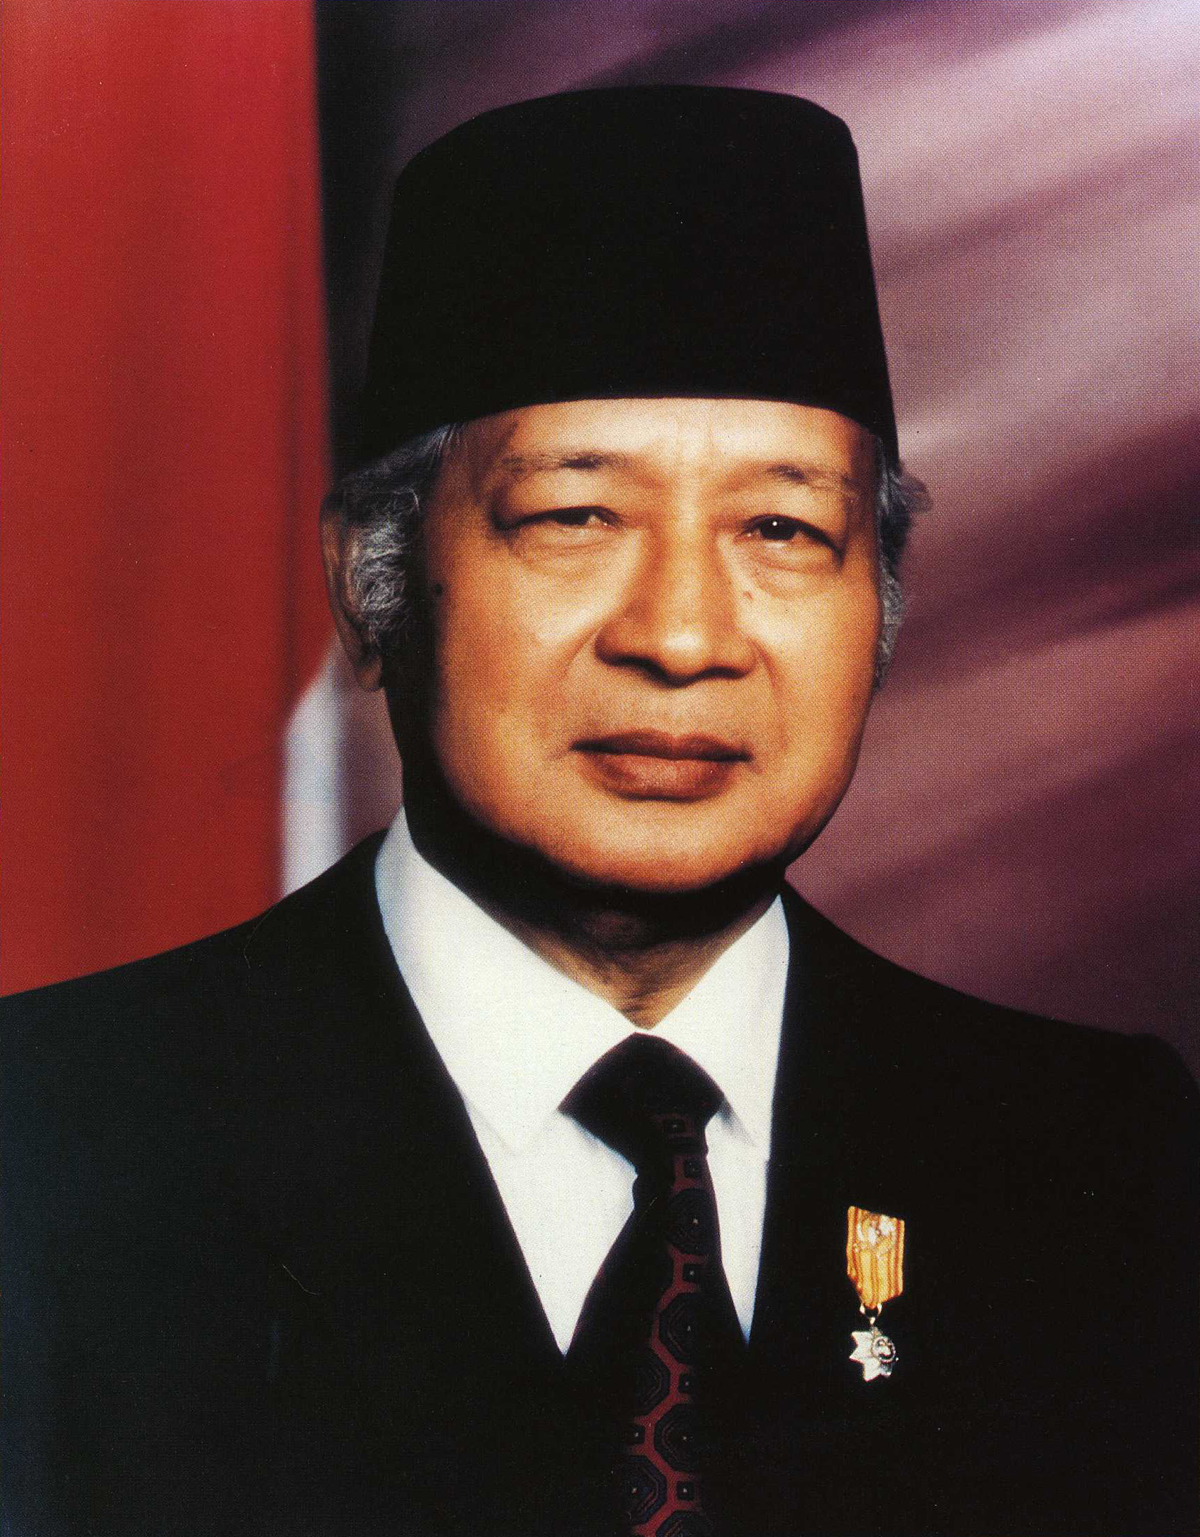 Presiden Indonesia dari Soekarno sampai sekarang